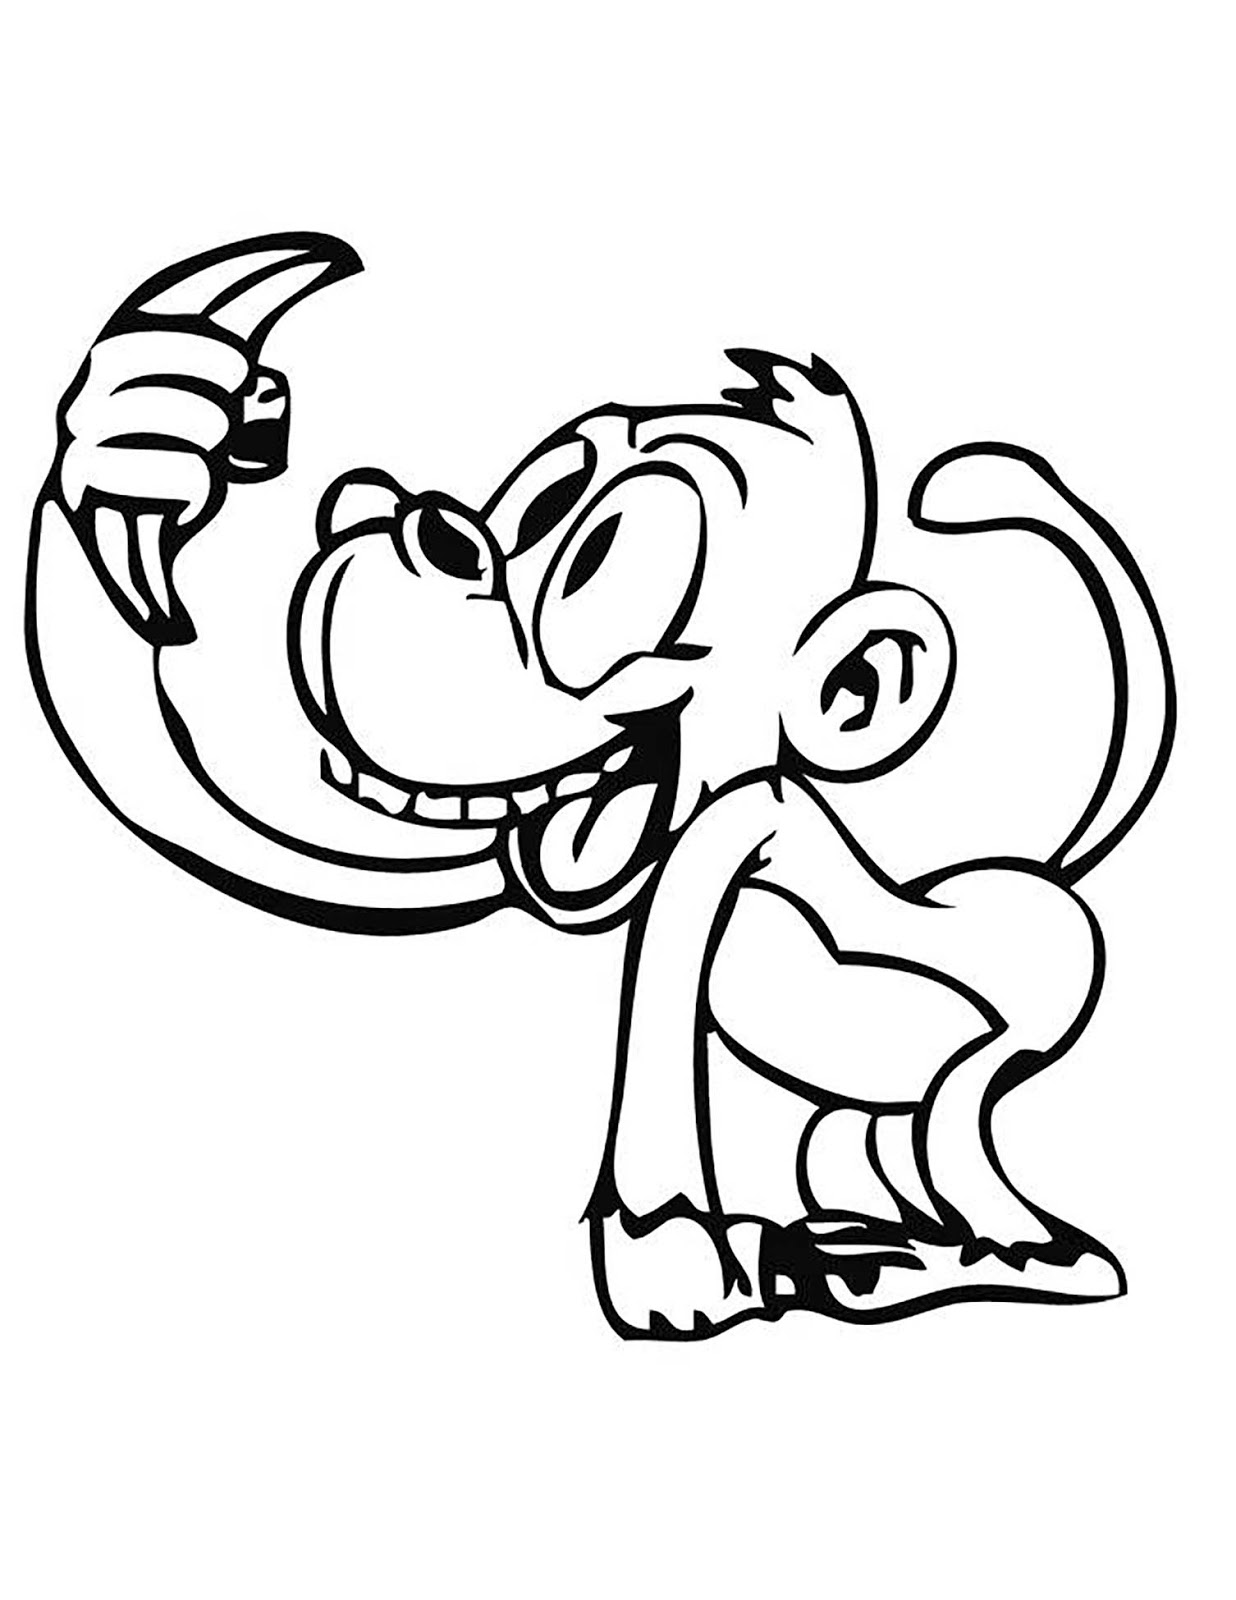 Tranh tô màu con khỉ vui vẻ khi cầm quả chuối